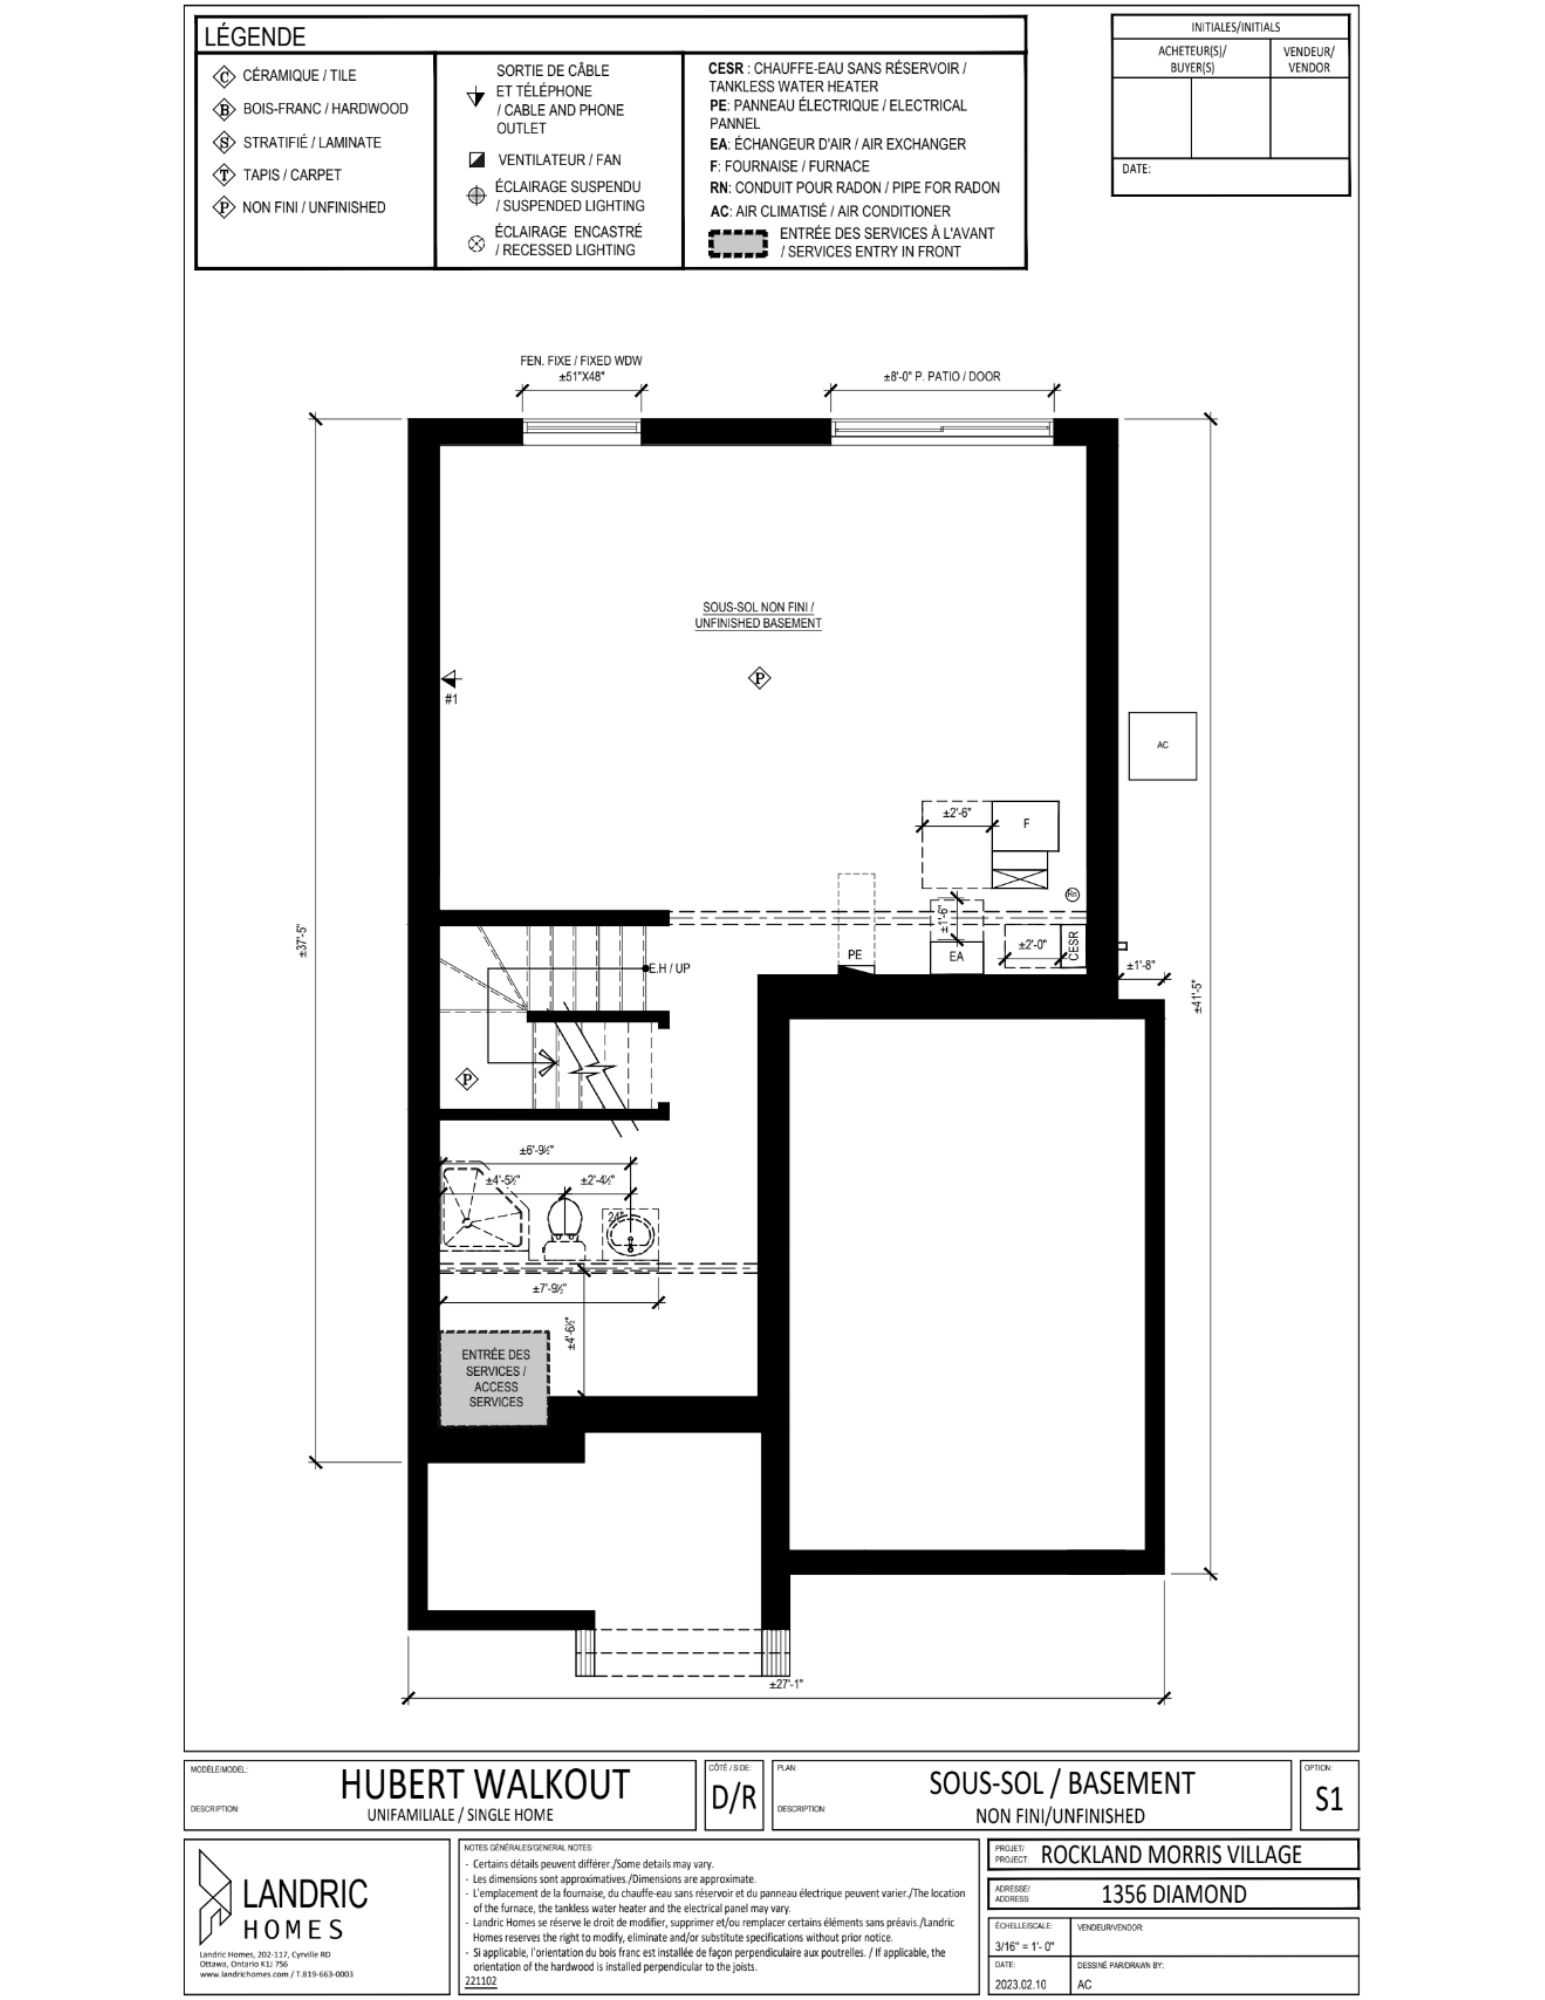 Beaumont, Morris Village floor plans (7)